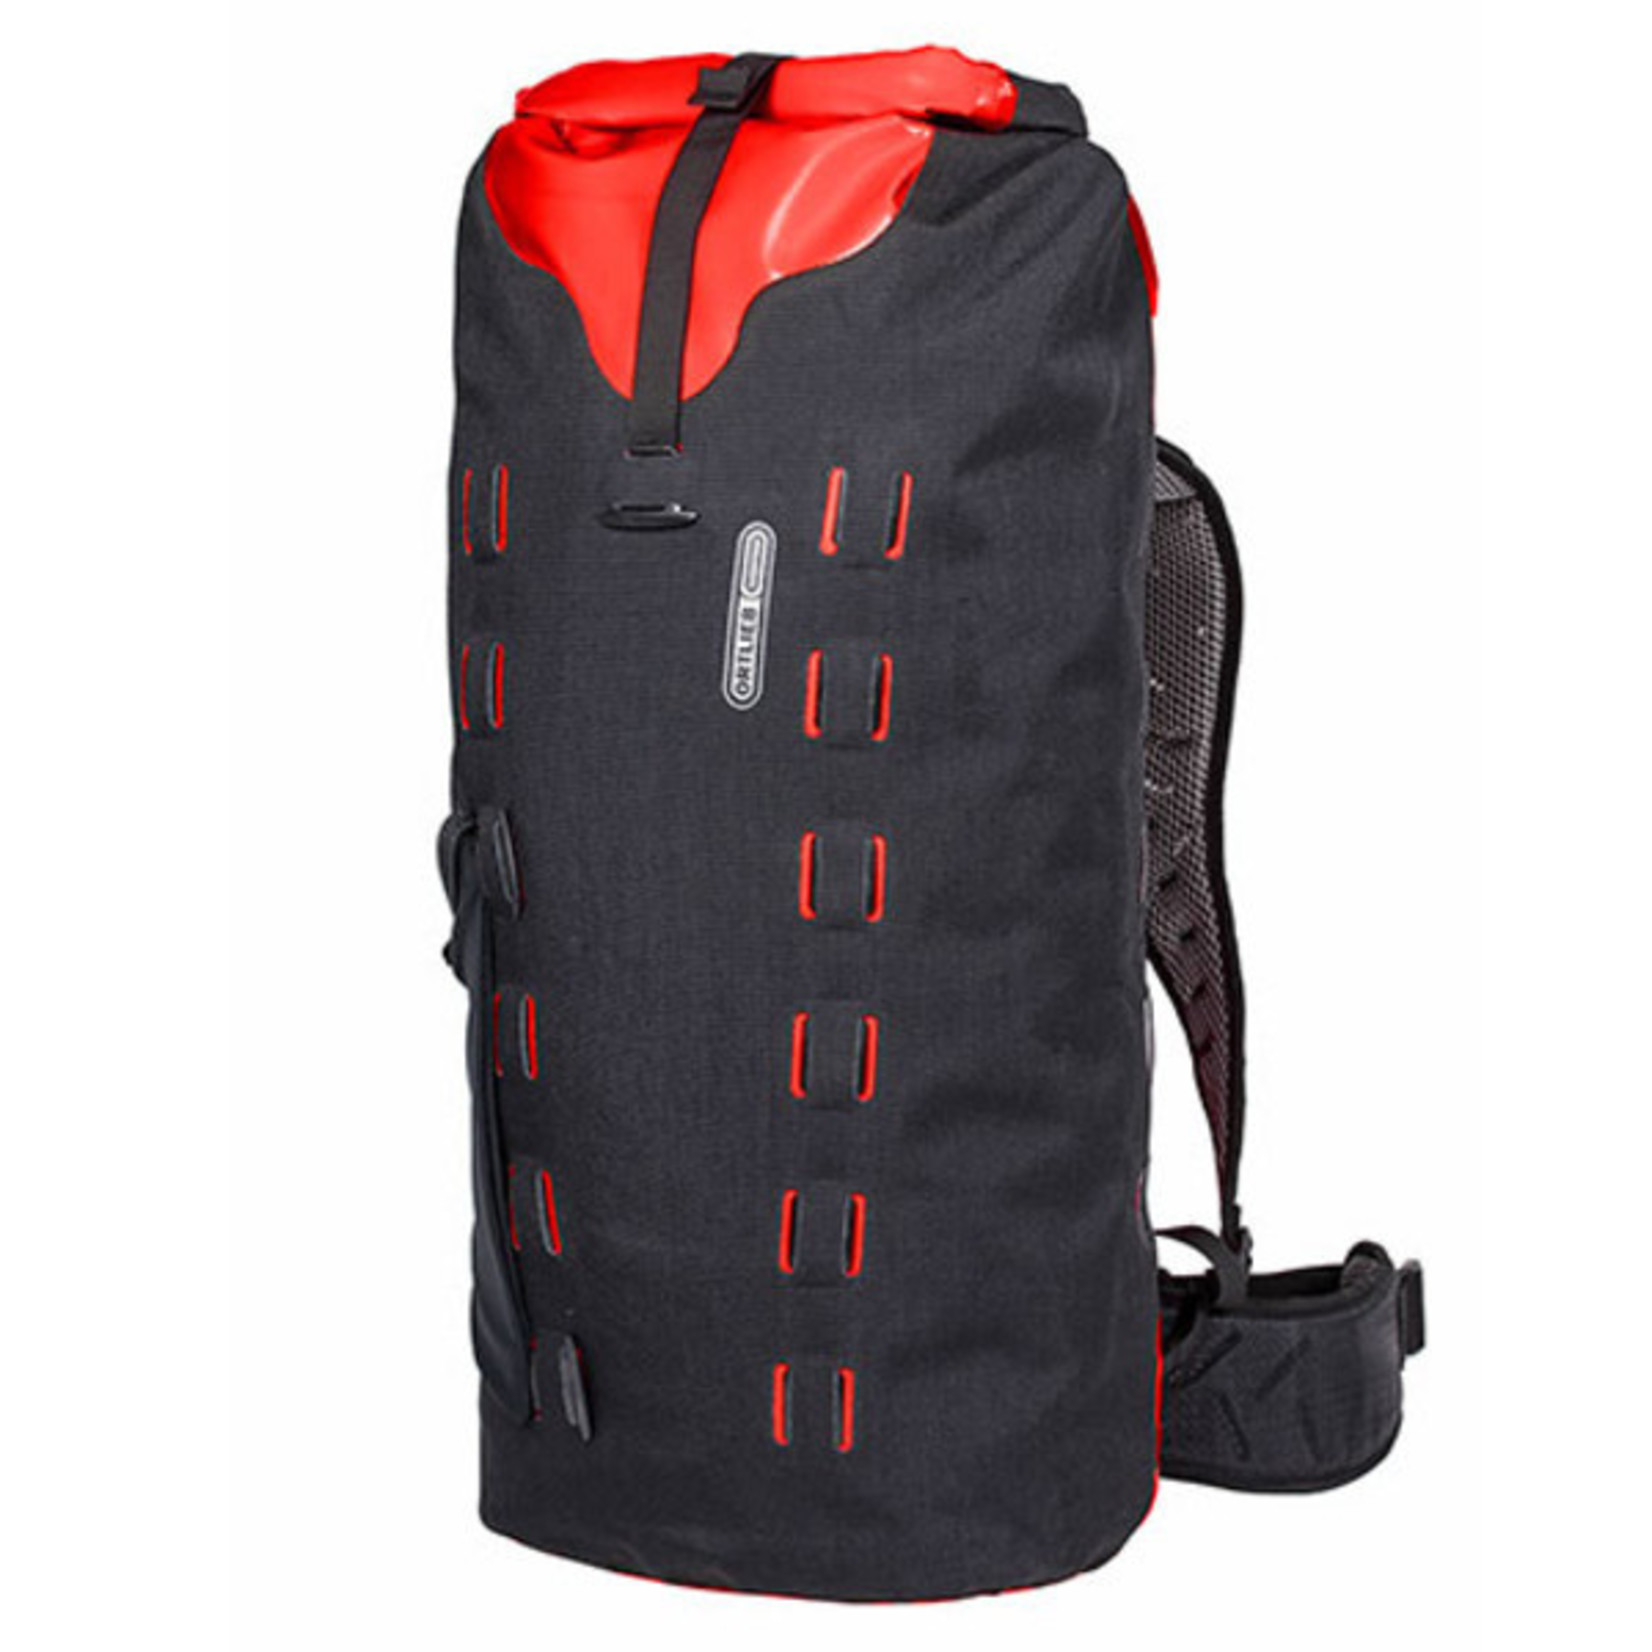 Ortlieb New Ortlieb R17153 Gear-Pack Backpack Waterproof 40L Black-Red